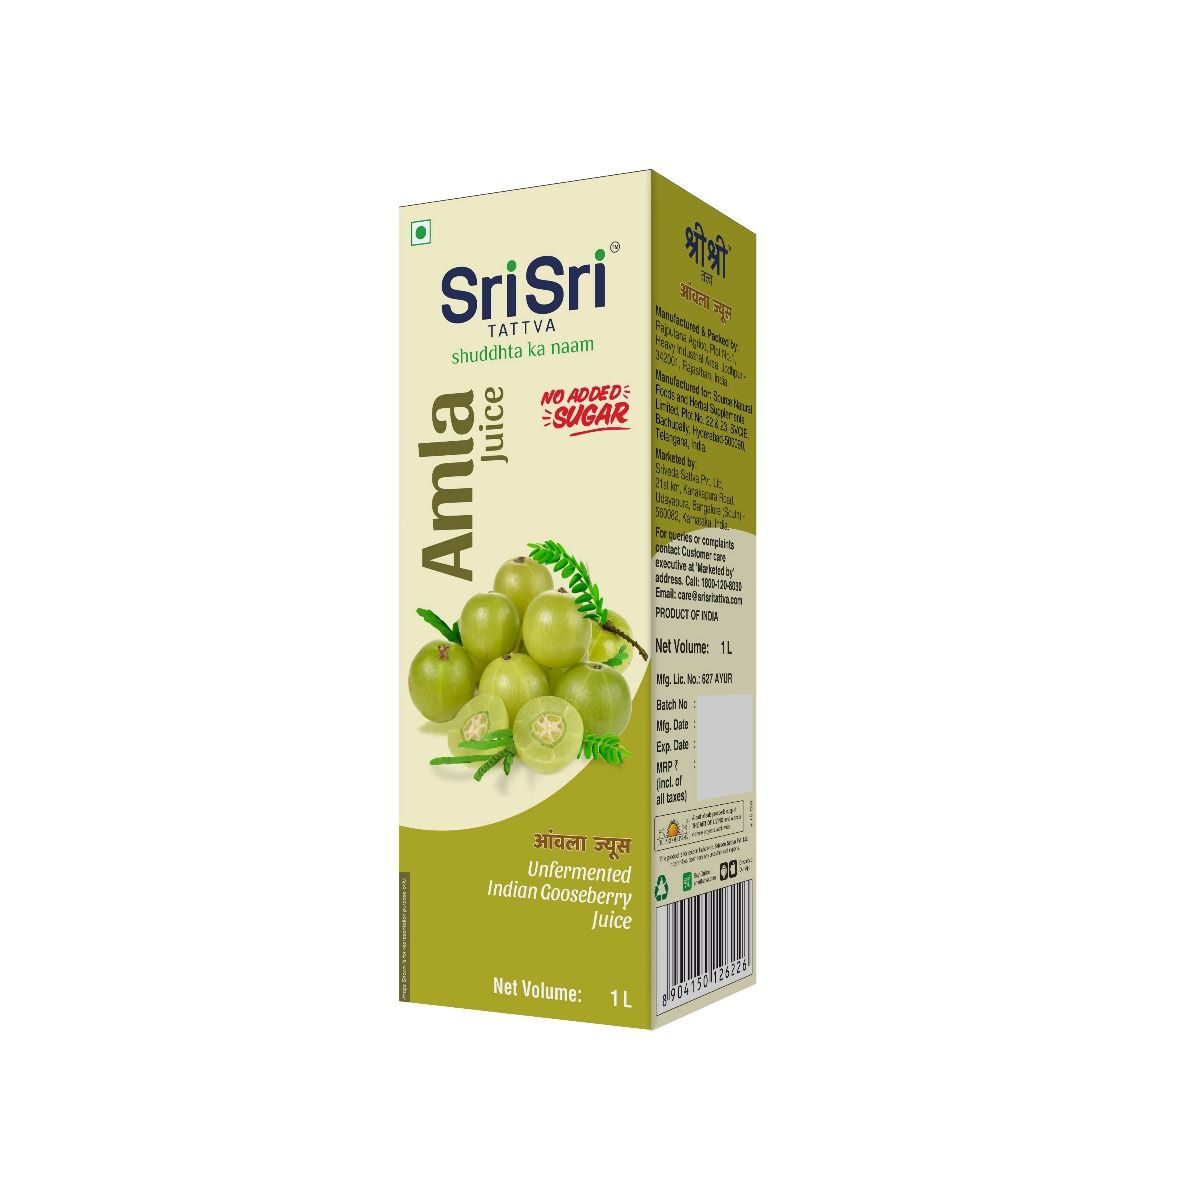 Sri Sri Tattva Amla Juice, 1000 ml, Pack of 1 